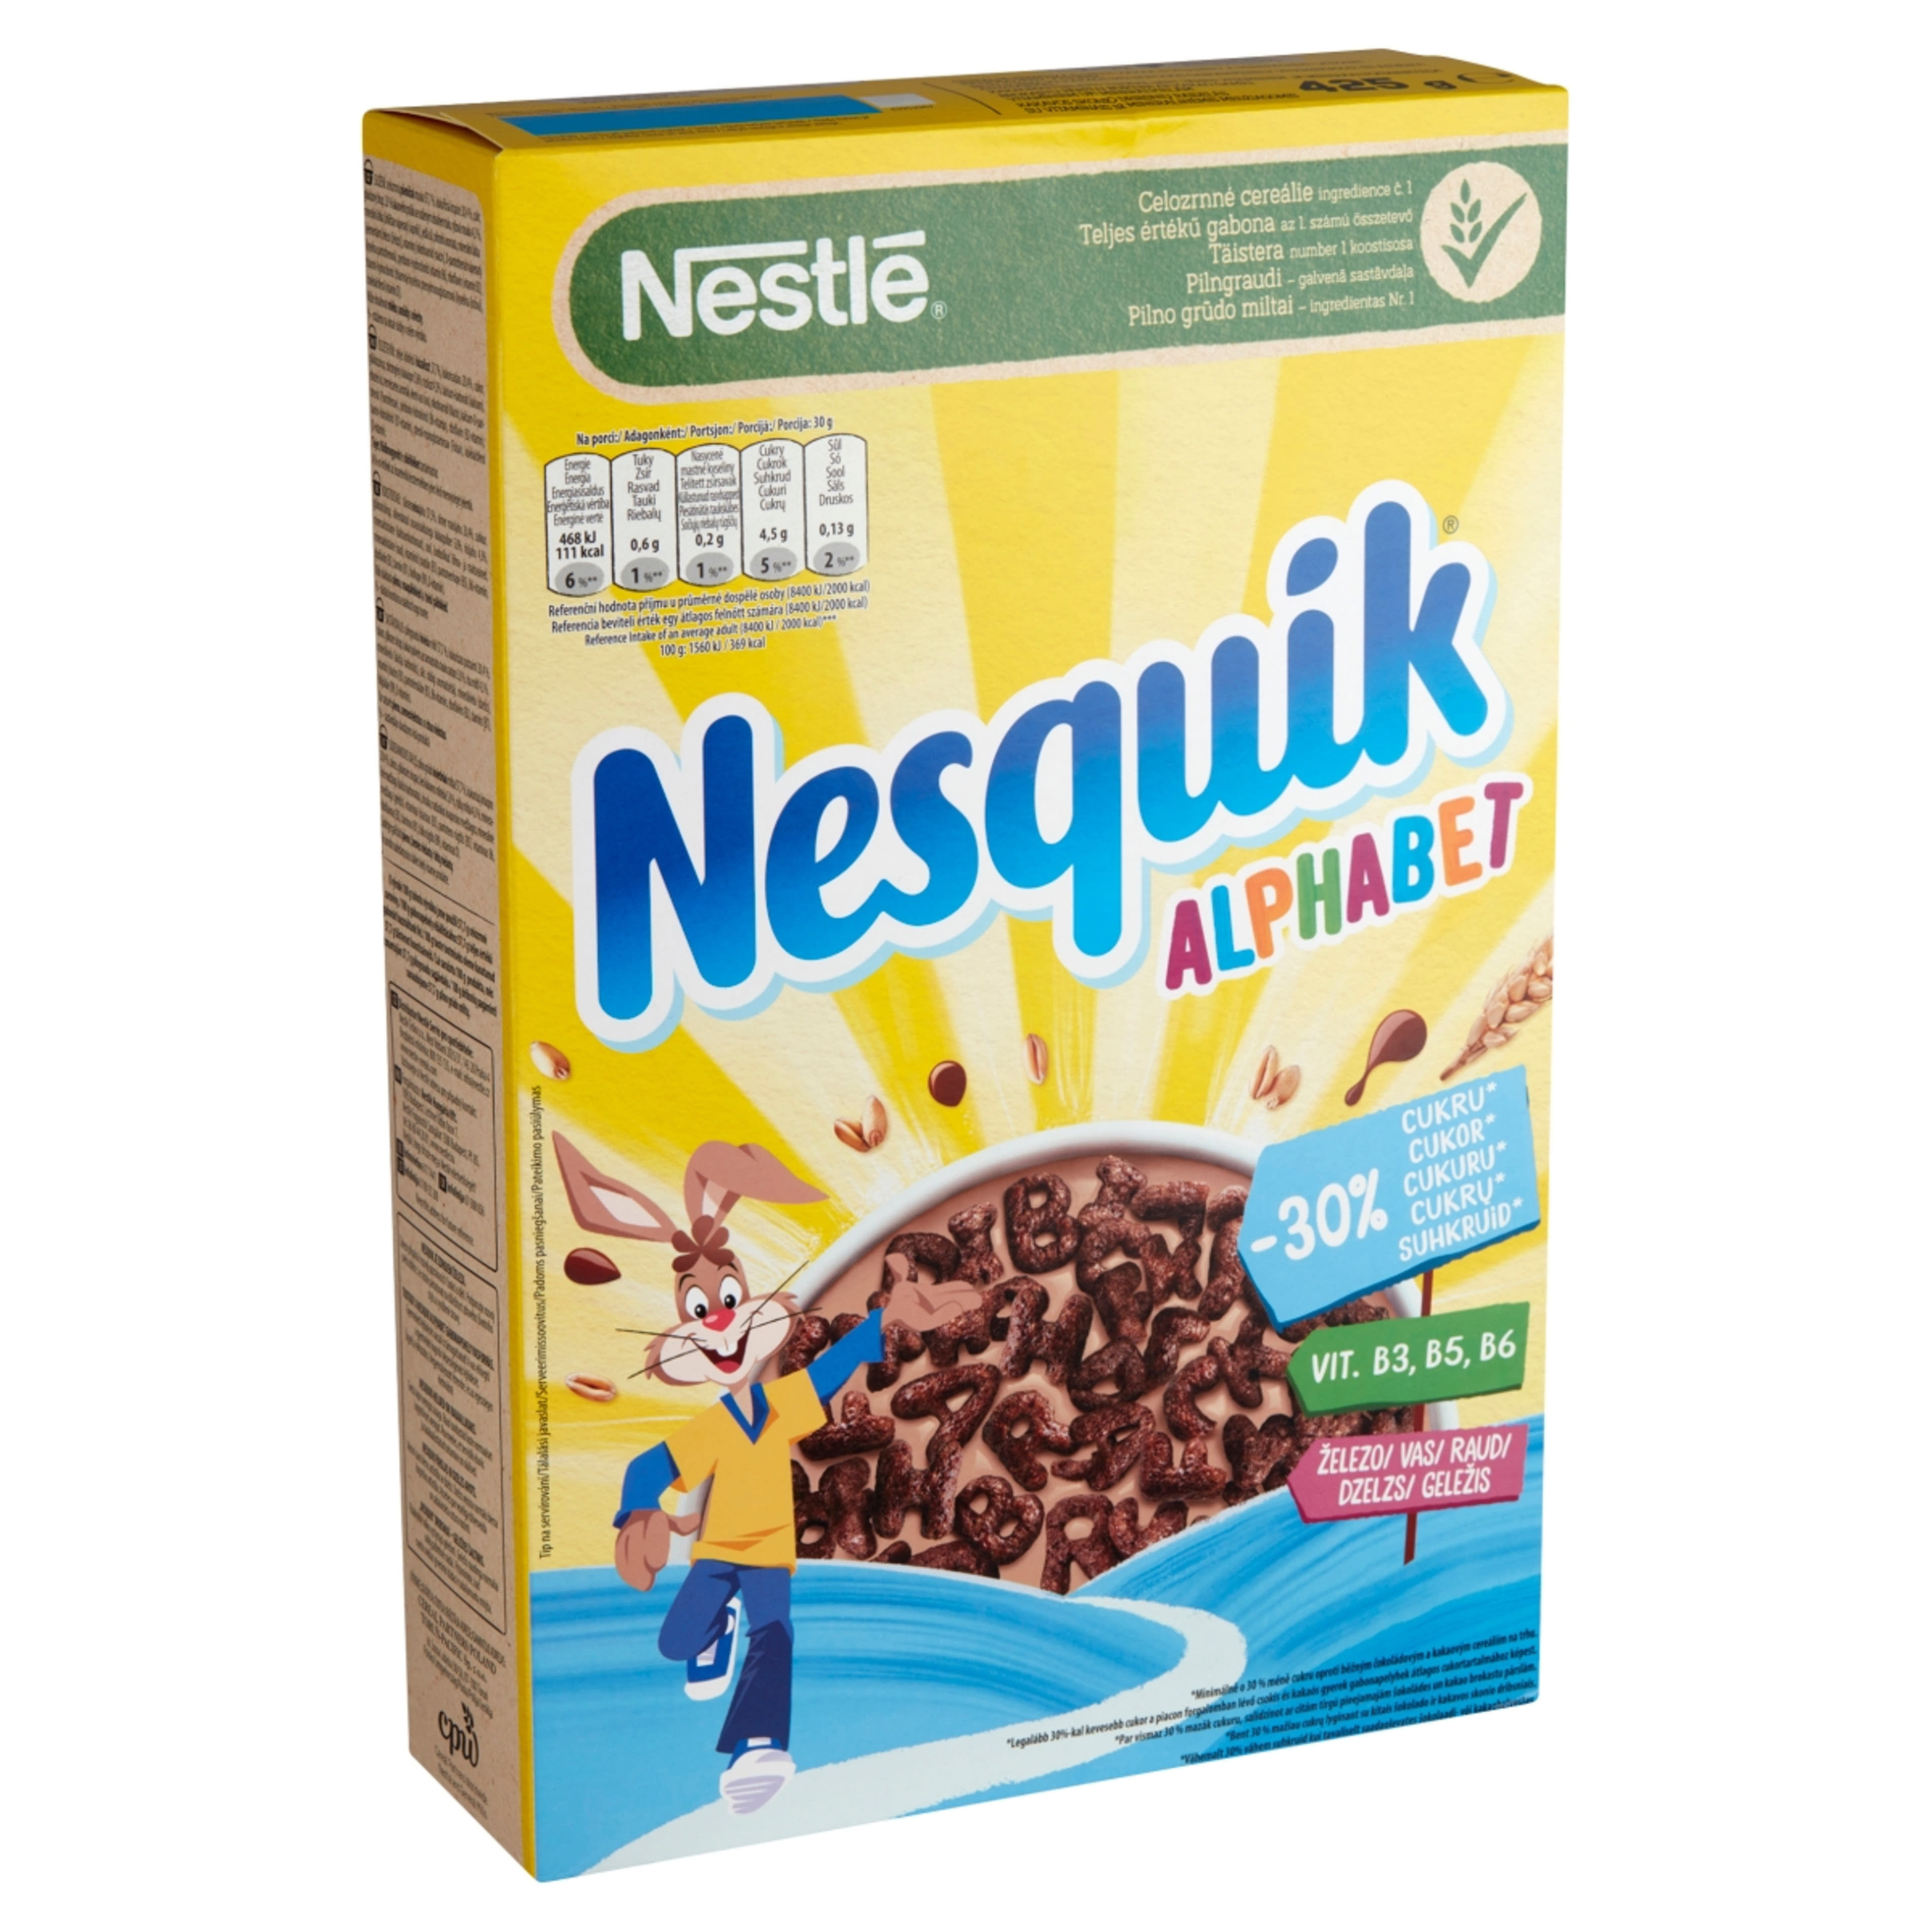 Nestlé Nesquik Alphabet gabonapehely kakaós  - 425 g-2